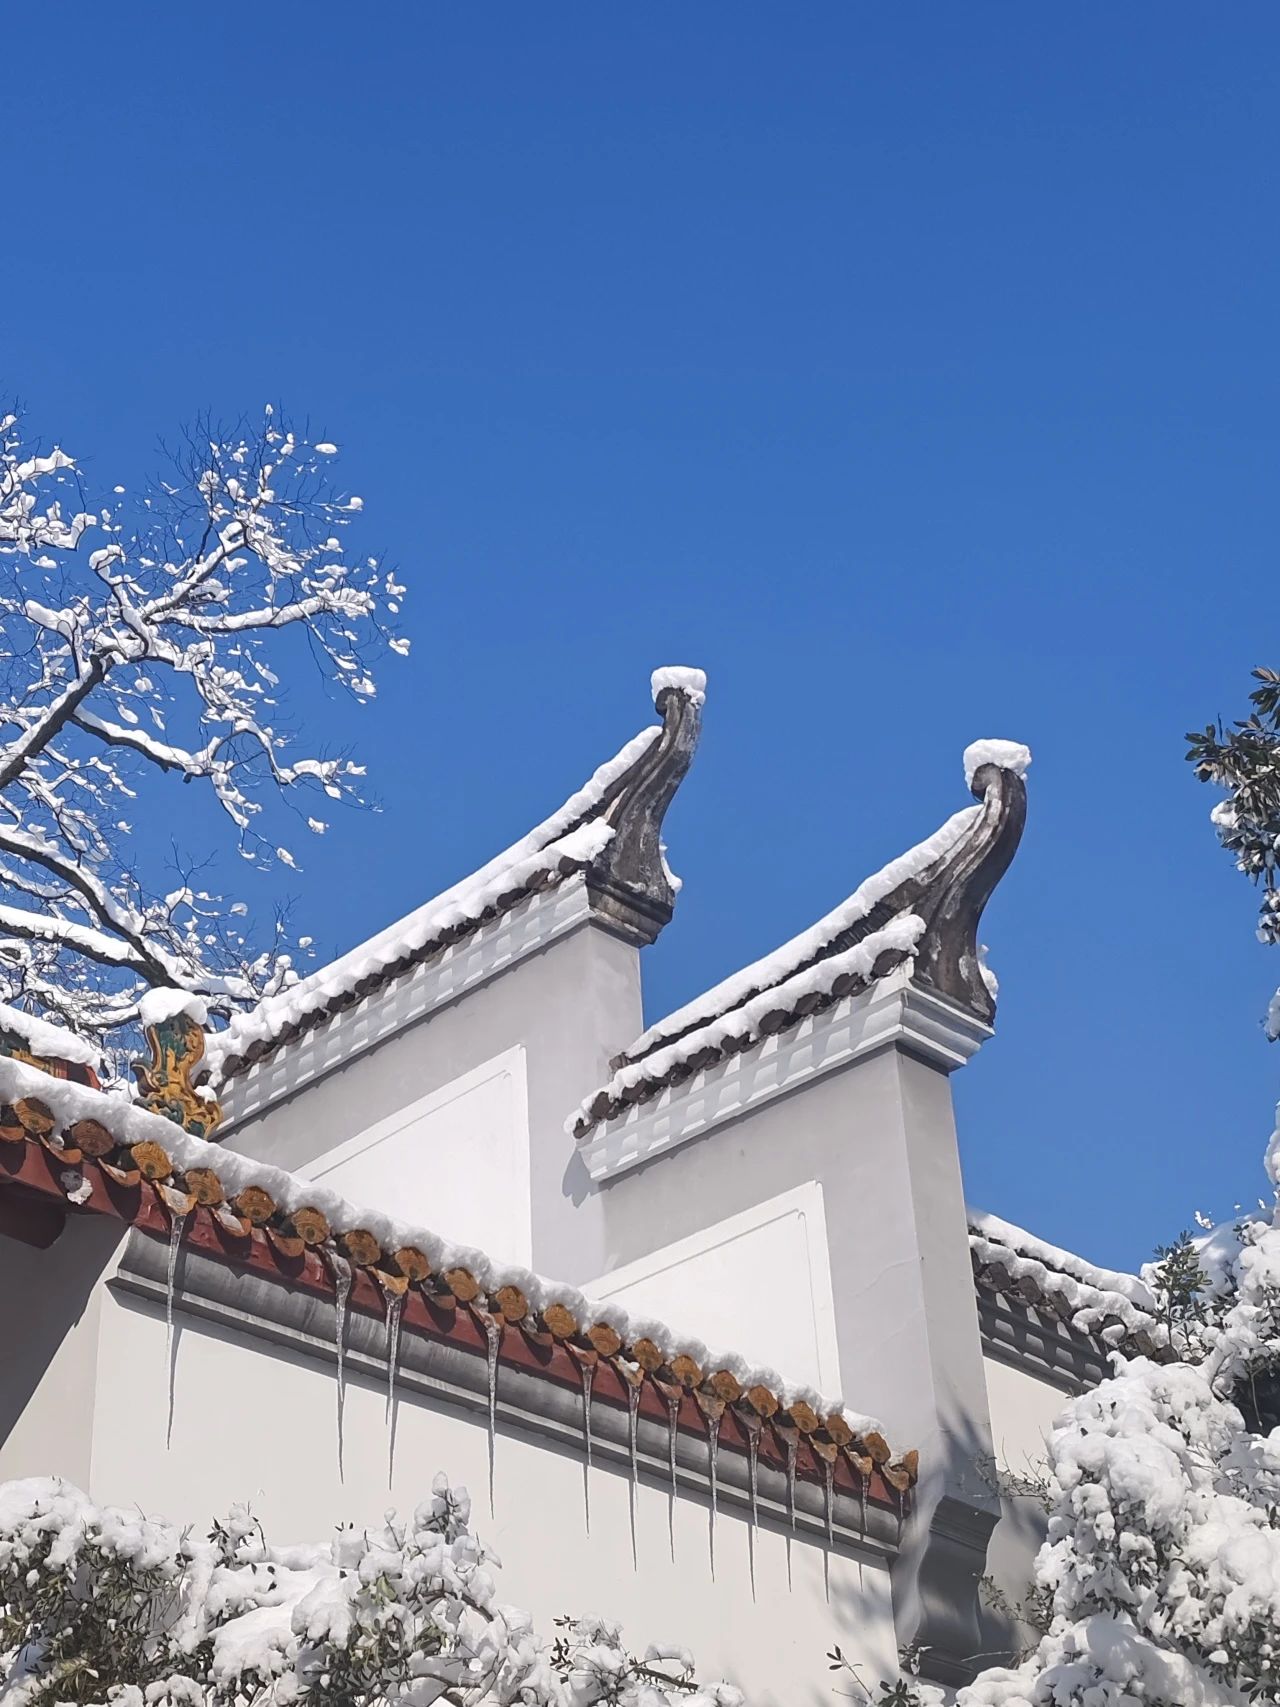 腊月暮冬
（《书院·听雪·雪霁》  摄影者：2021级中国史硕士研究生 郝静娴)